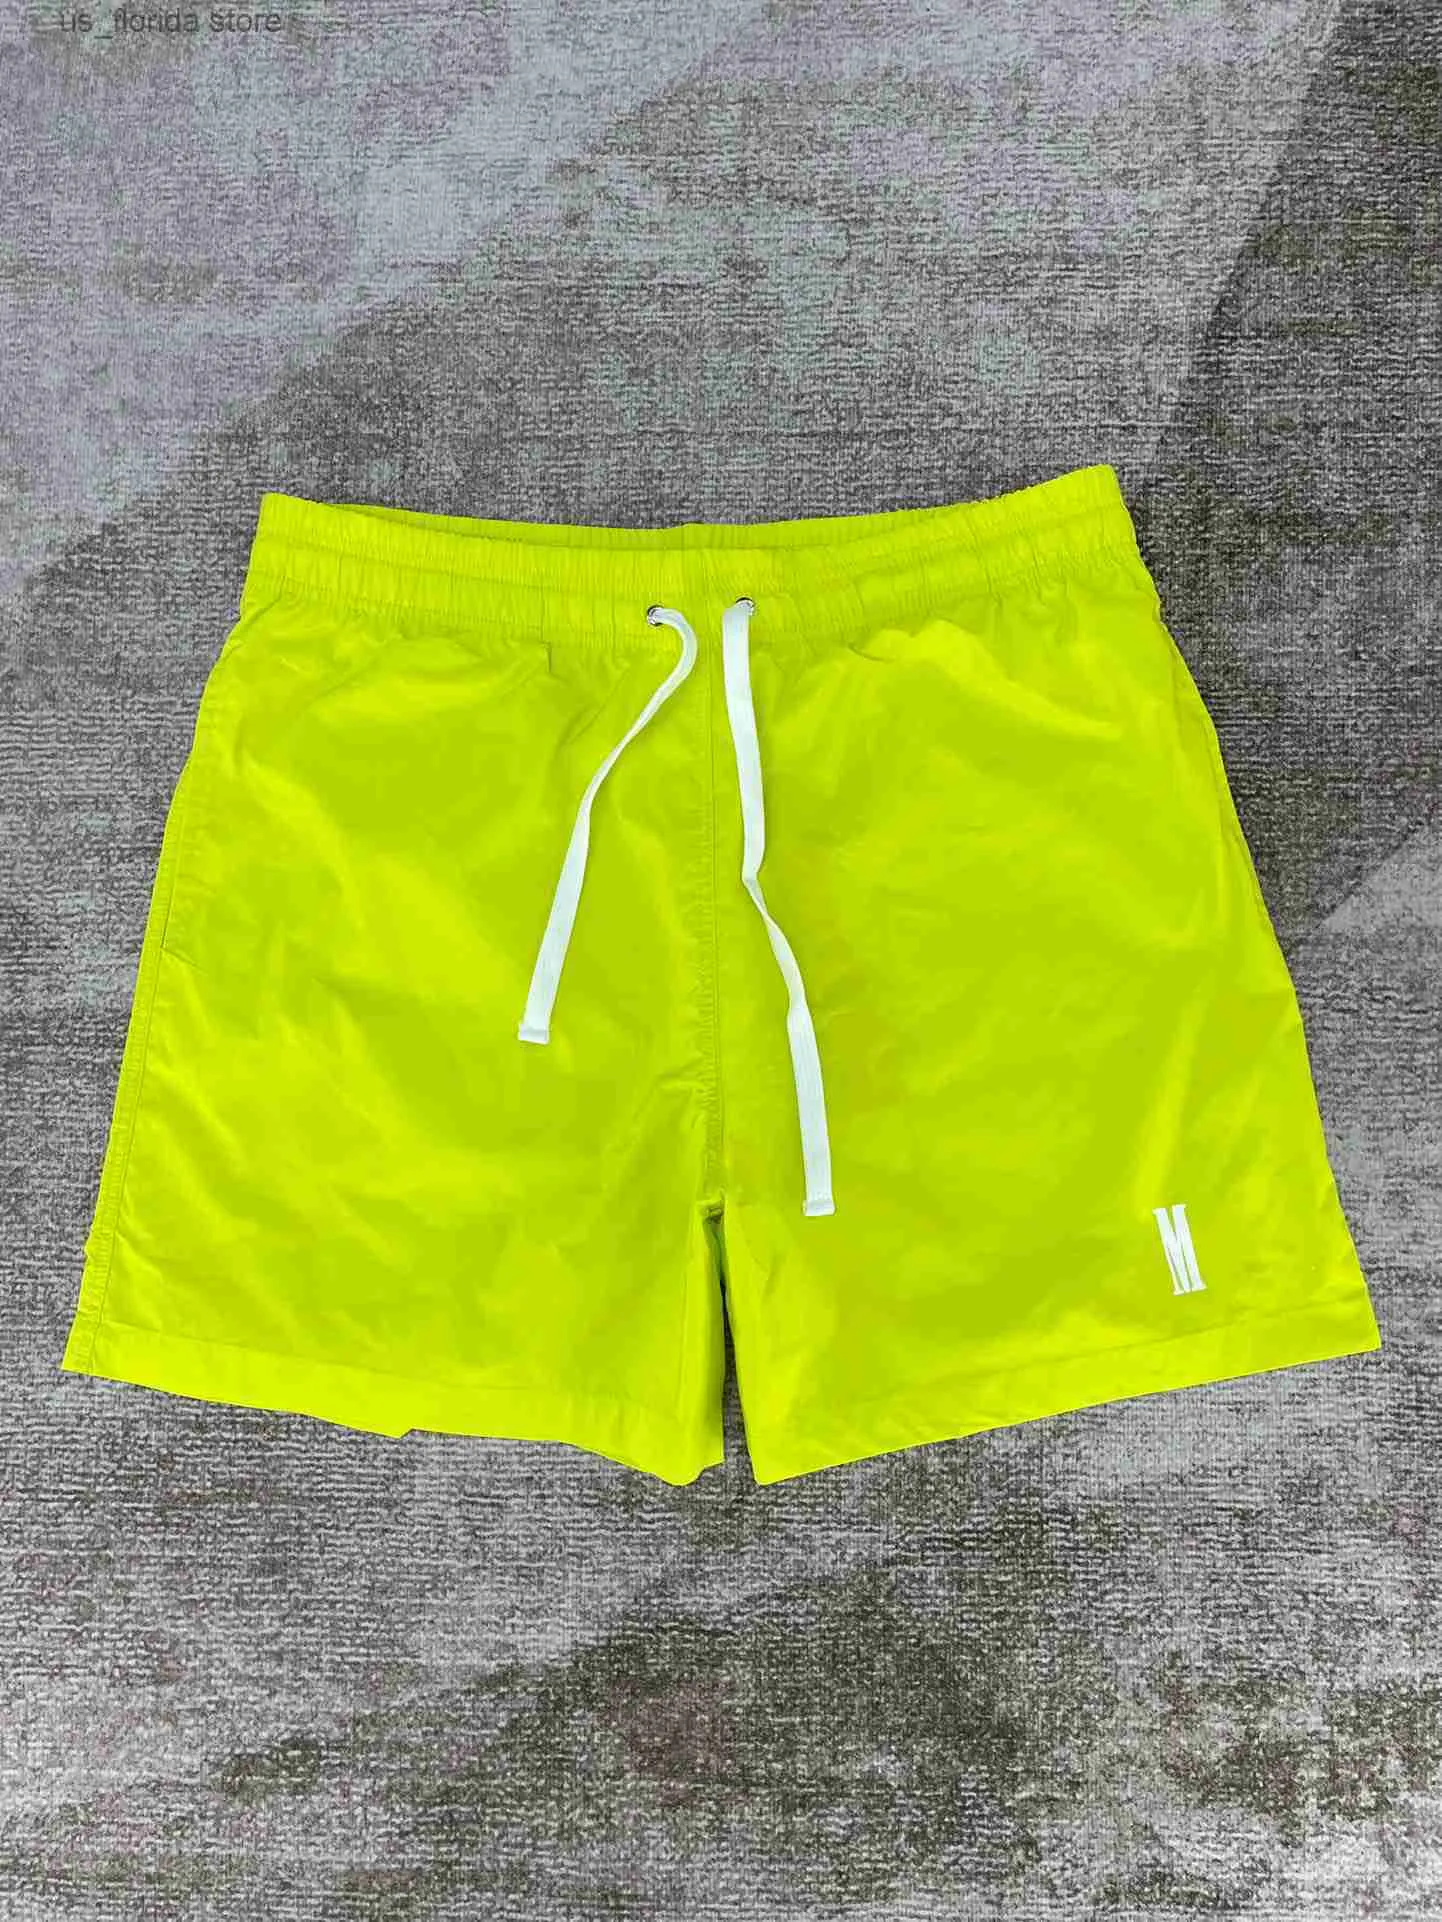 Männer Shorts High-end-Qualität Benutzerdefinierte Strand Hosen Shorts Brief Gedruckt Kordelzug Sommer Strand Shorts Mann Y240320